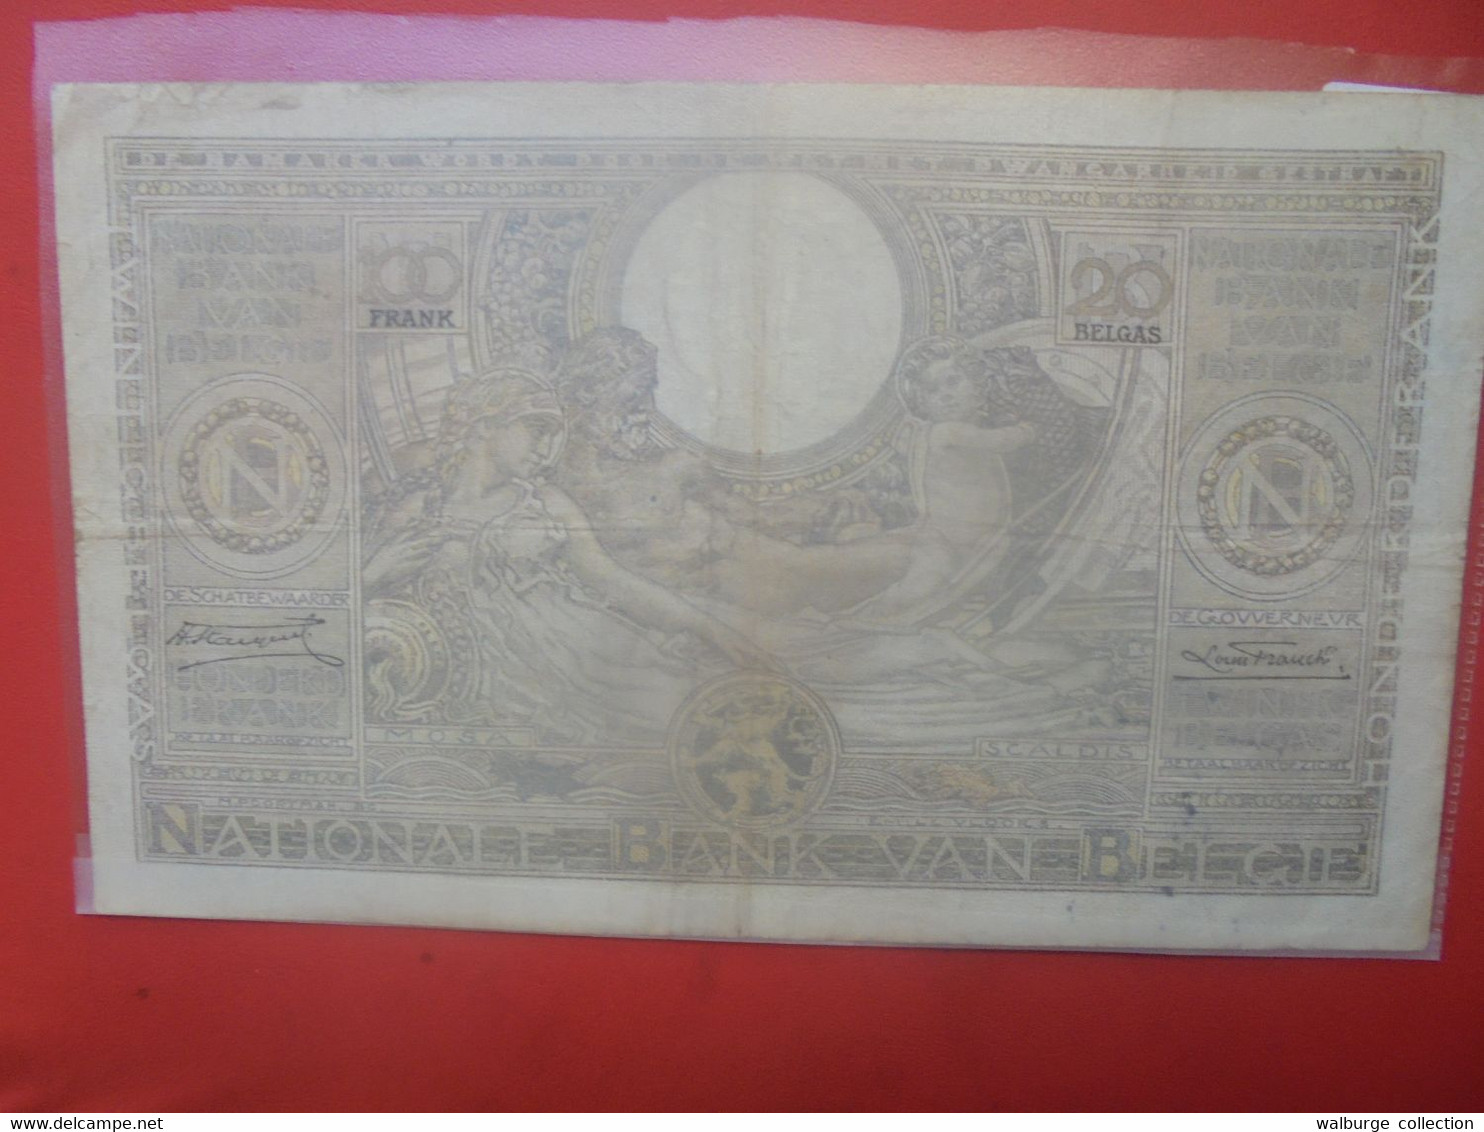 BELGIQUE 100 FRANCS 1935(Date+Rare) Circuler (B.27) - 100 Francos & 100 Francos-20 Belgas